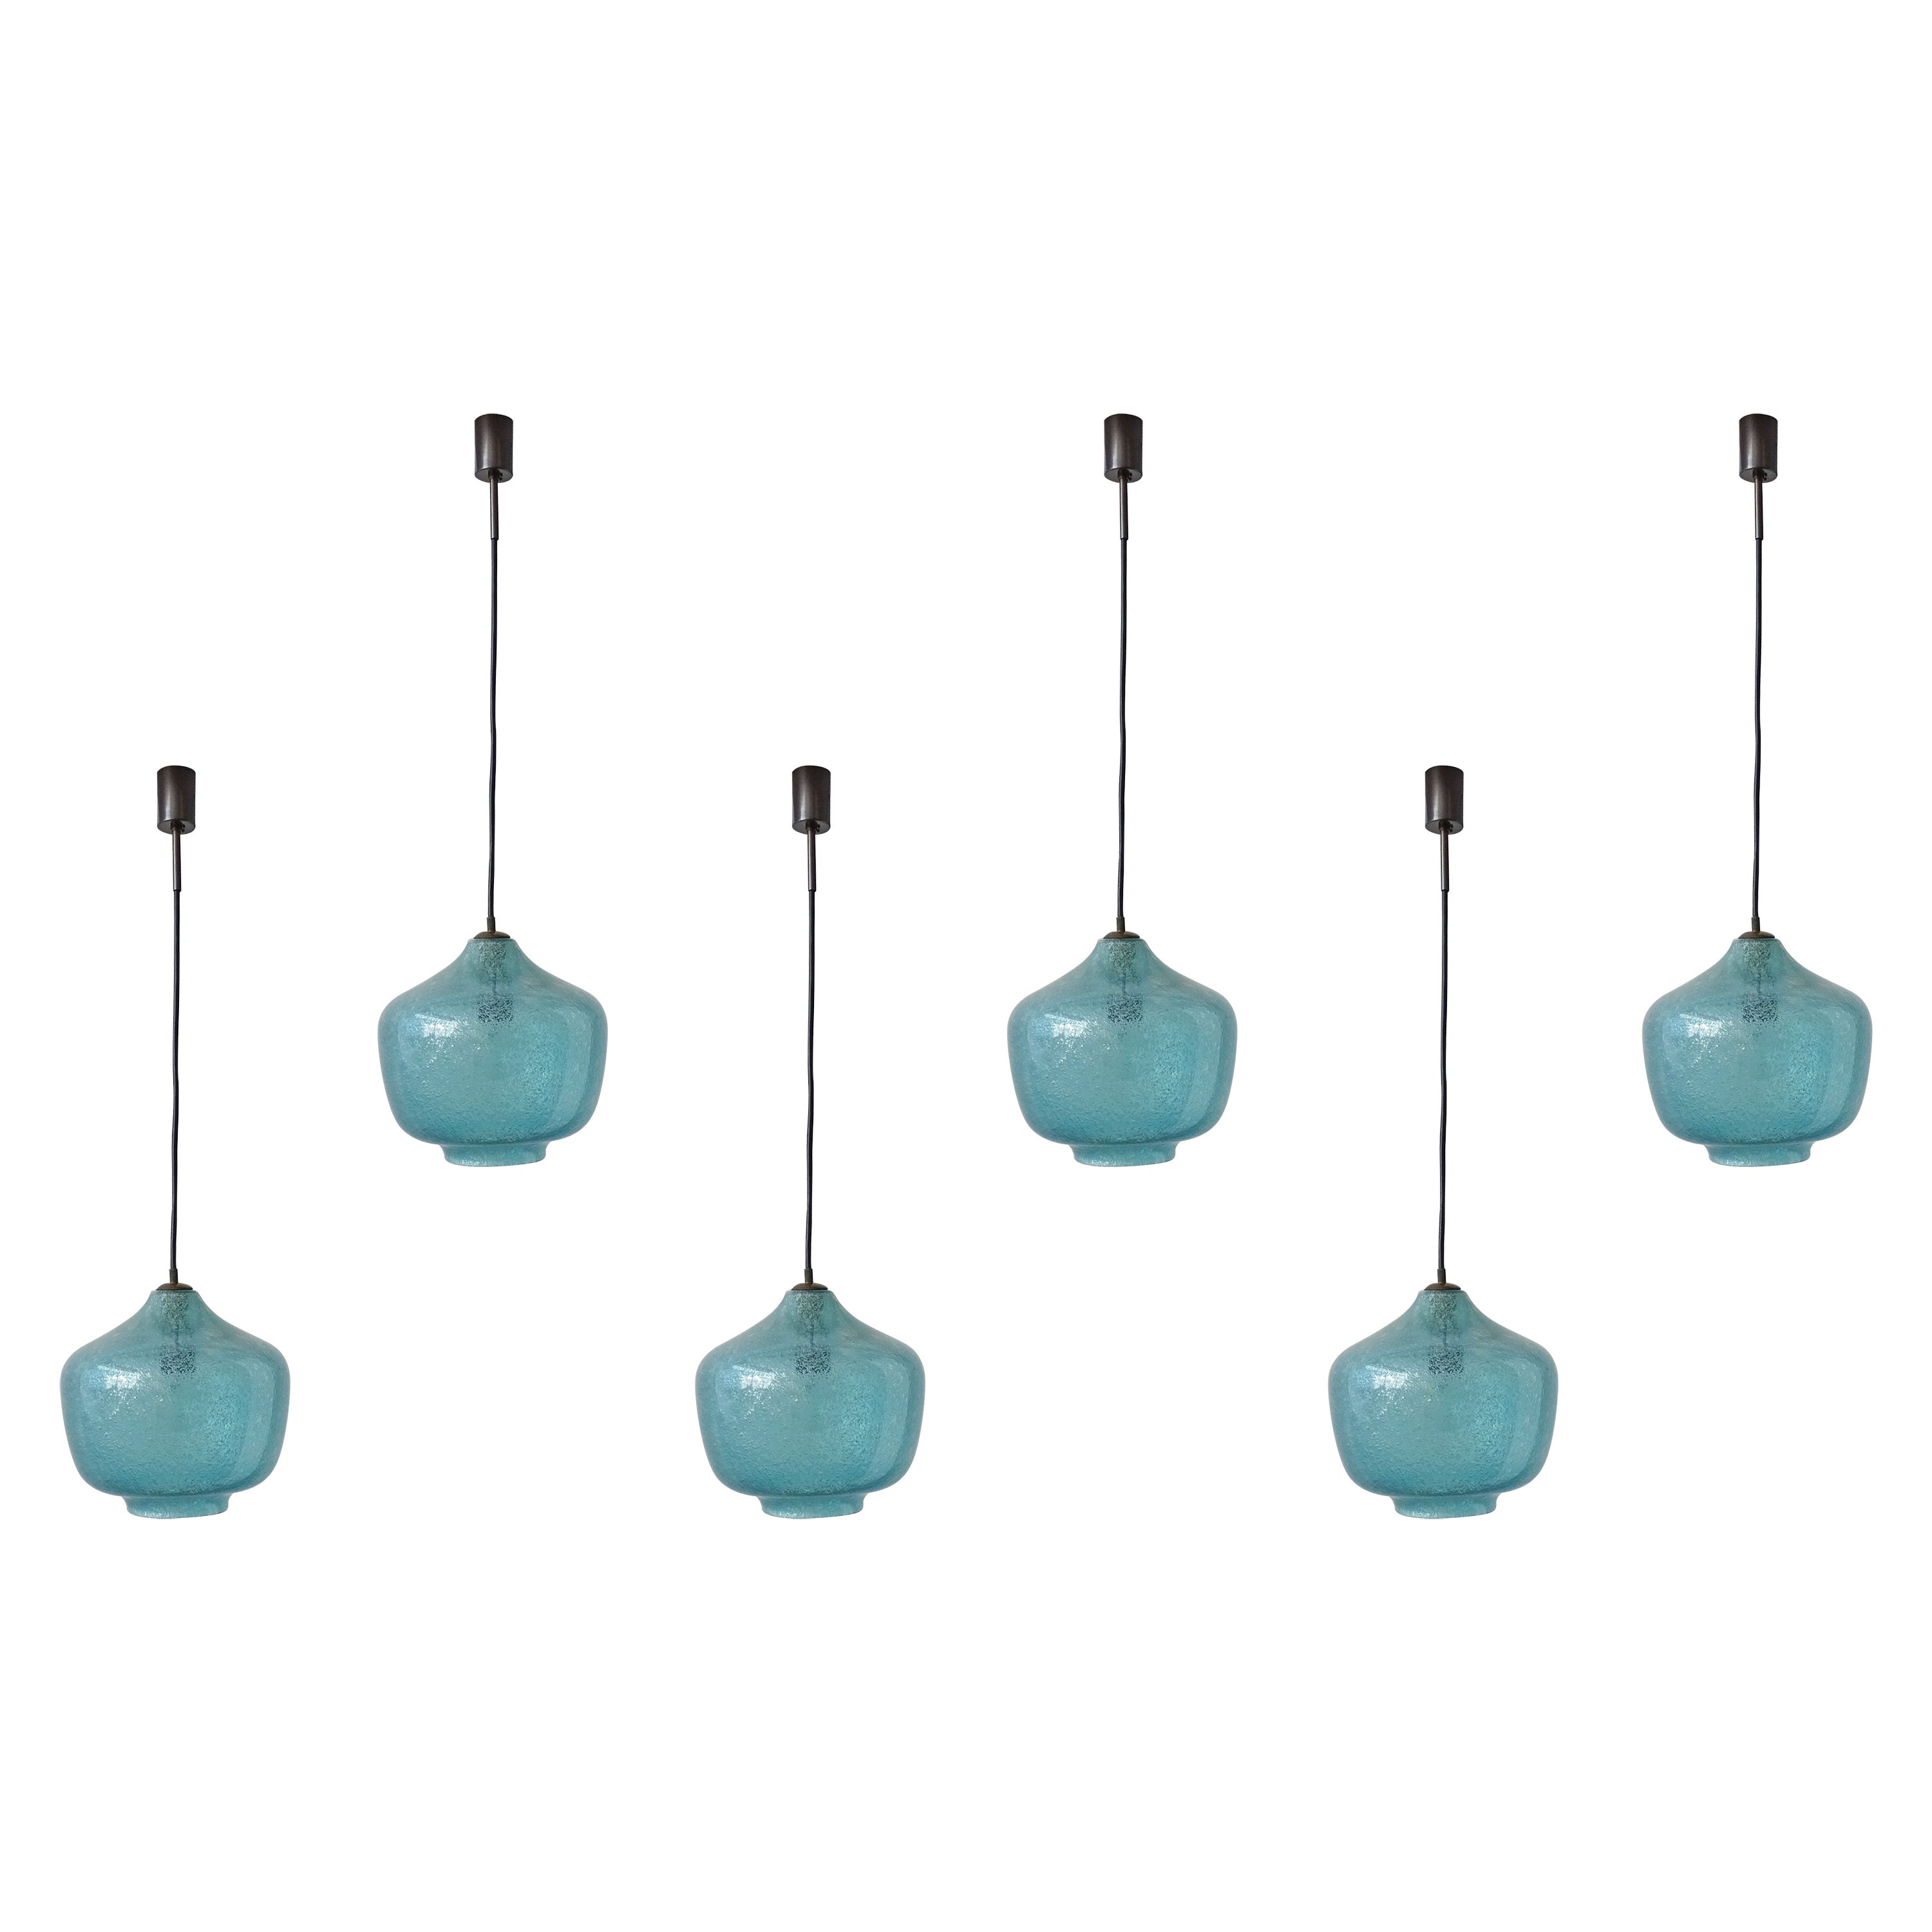 Seguso Sky Blue Bollicine Murano glass pendant lamps, Italy 1950s For Sale